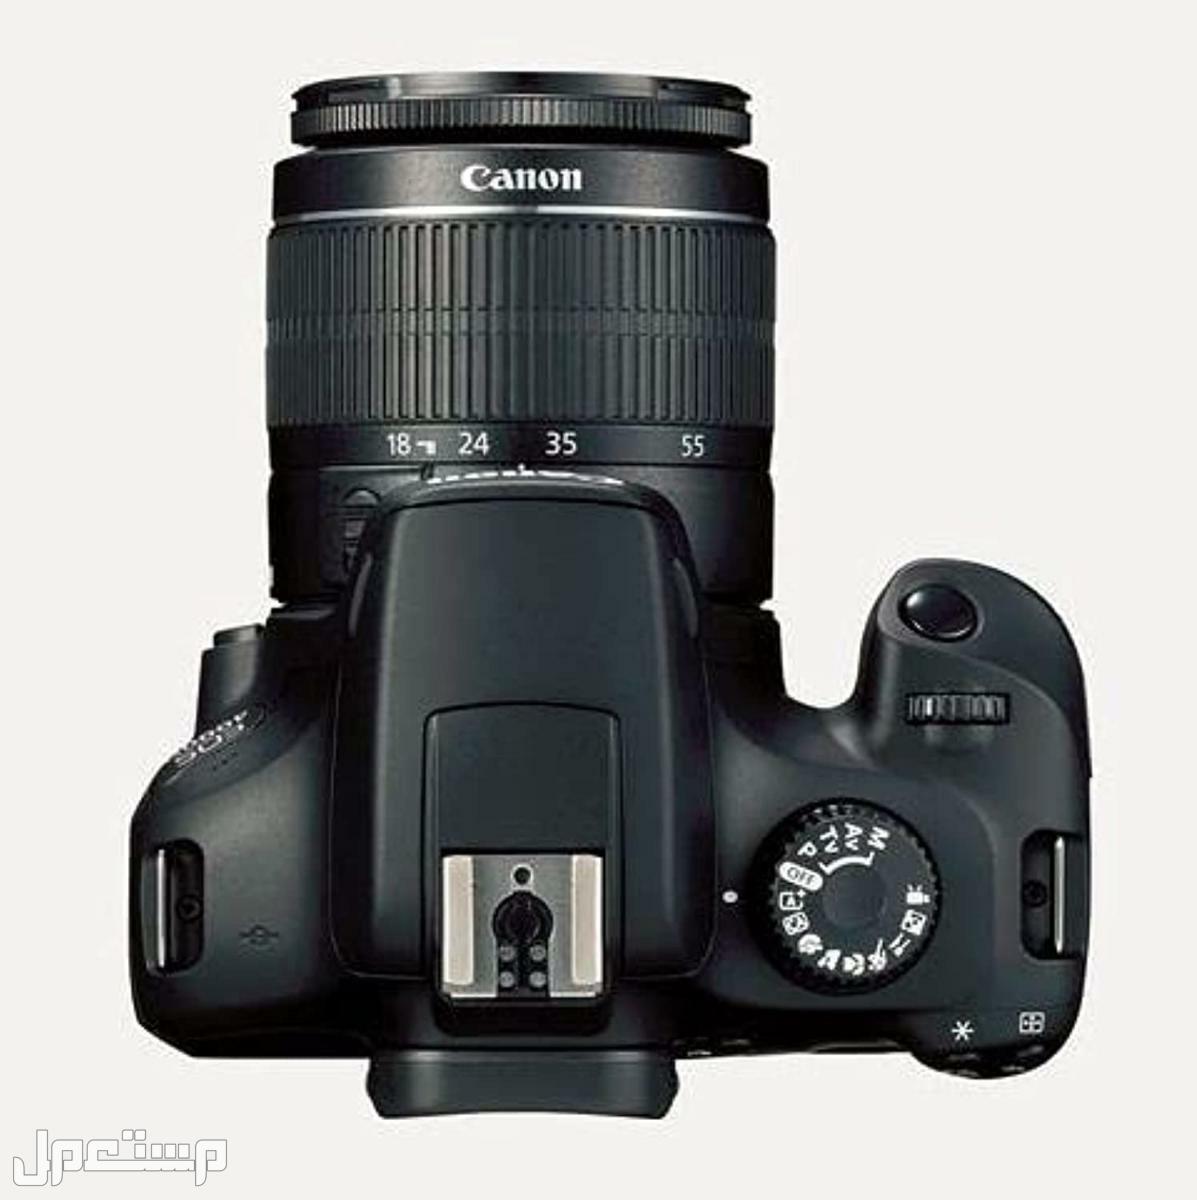 مواصفات وأهم مميزات وأسعار أرخص كاميرا تصوير من كانون كاميرا كانون  D 4000 بعدسة احادية